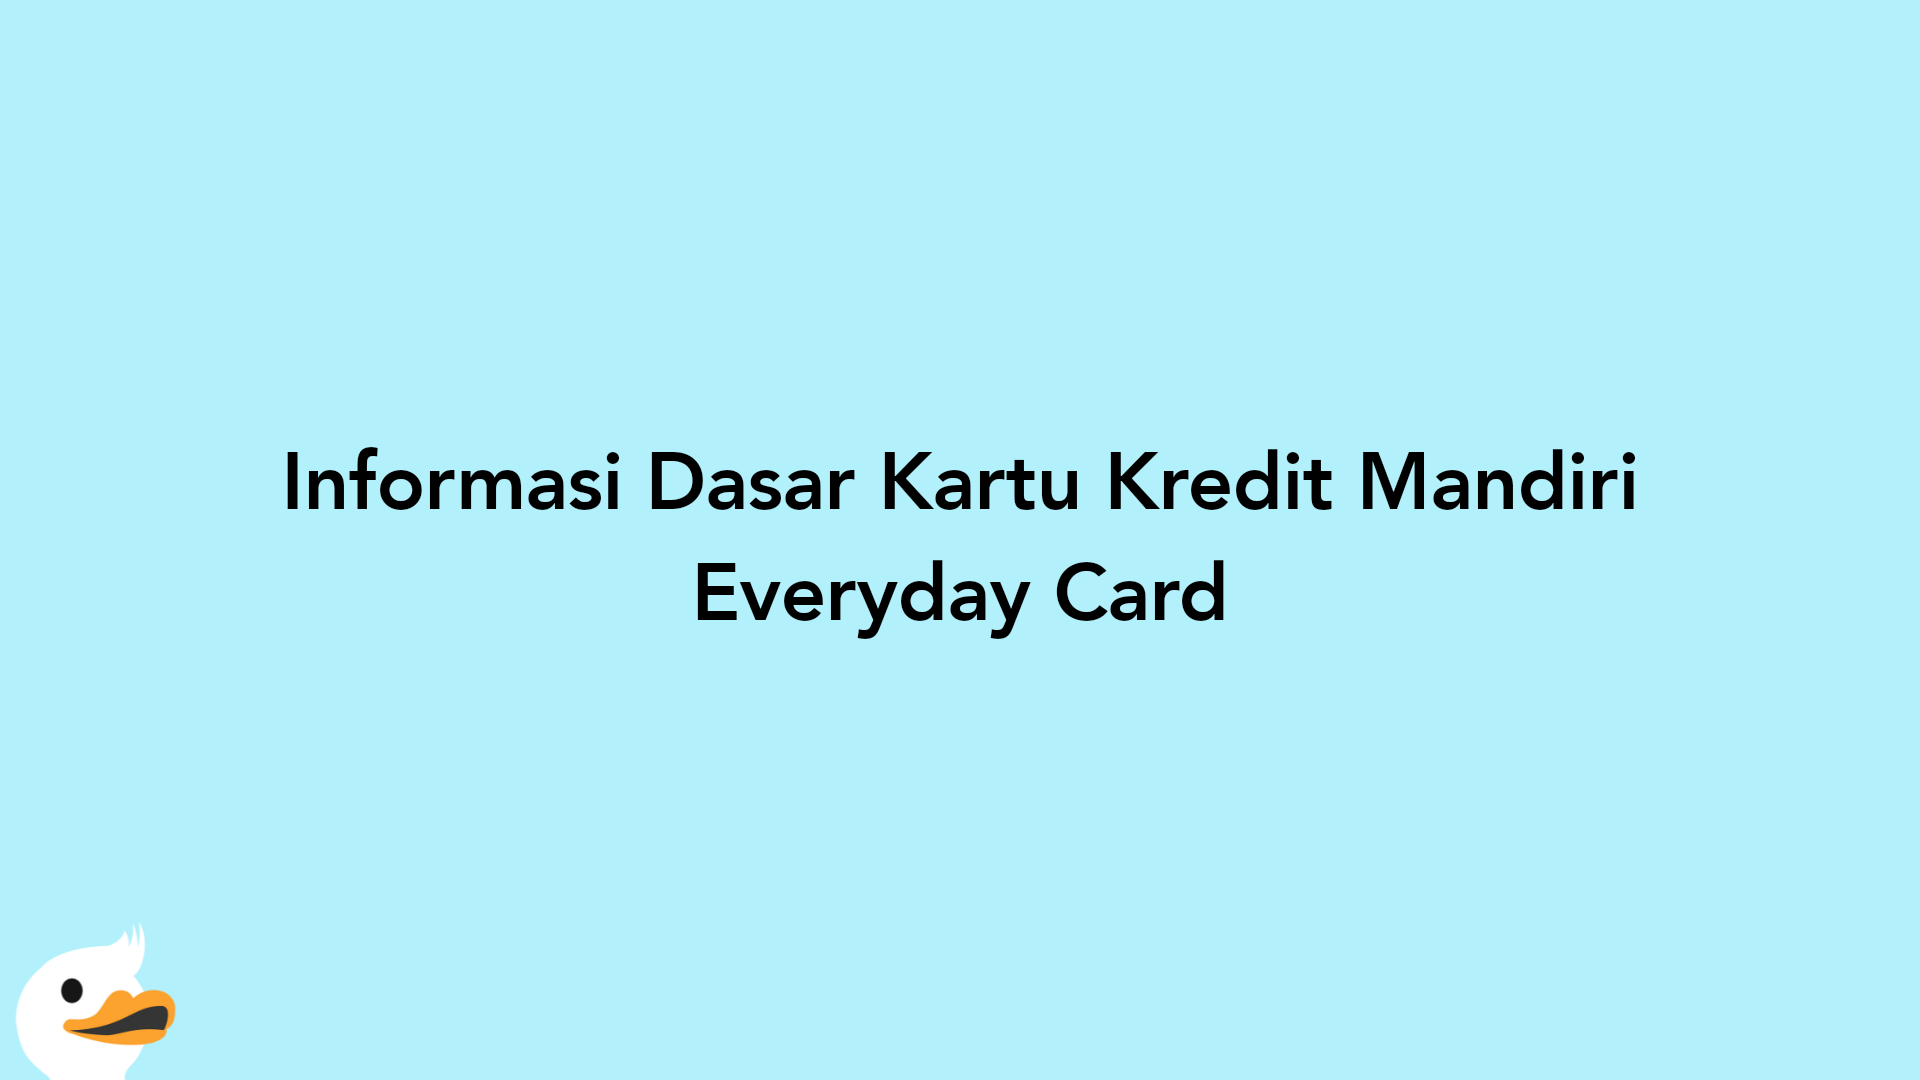 Informasi Dasar Kartu Kredit Mandiri Everyday Card